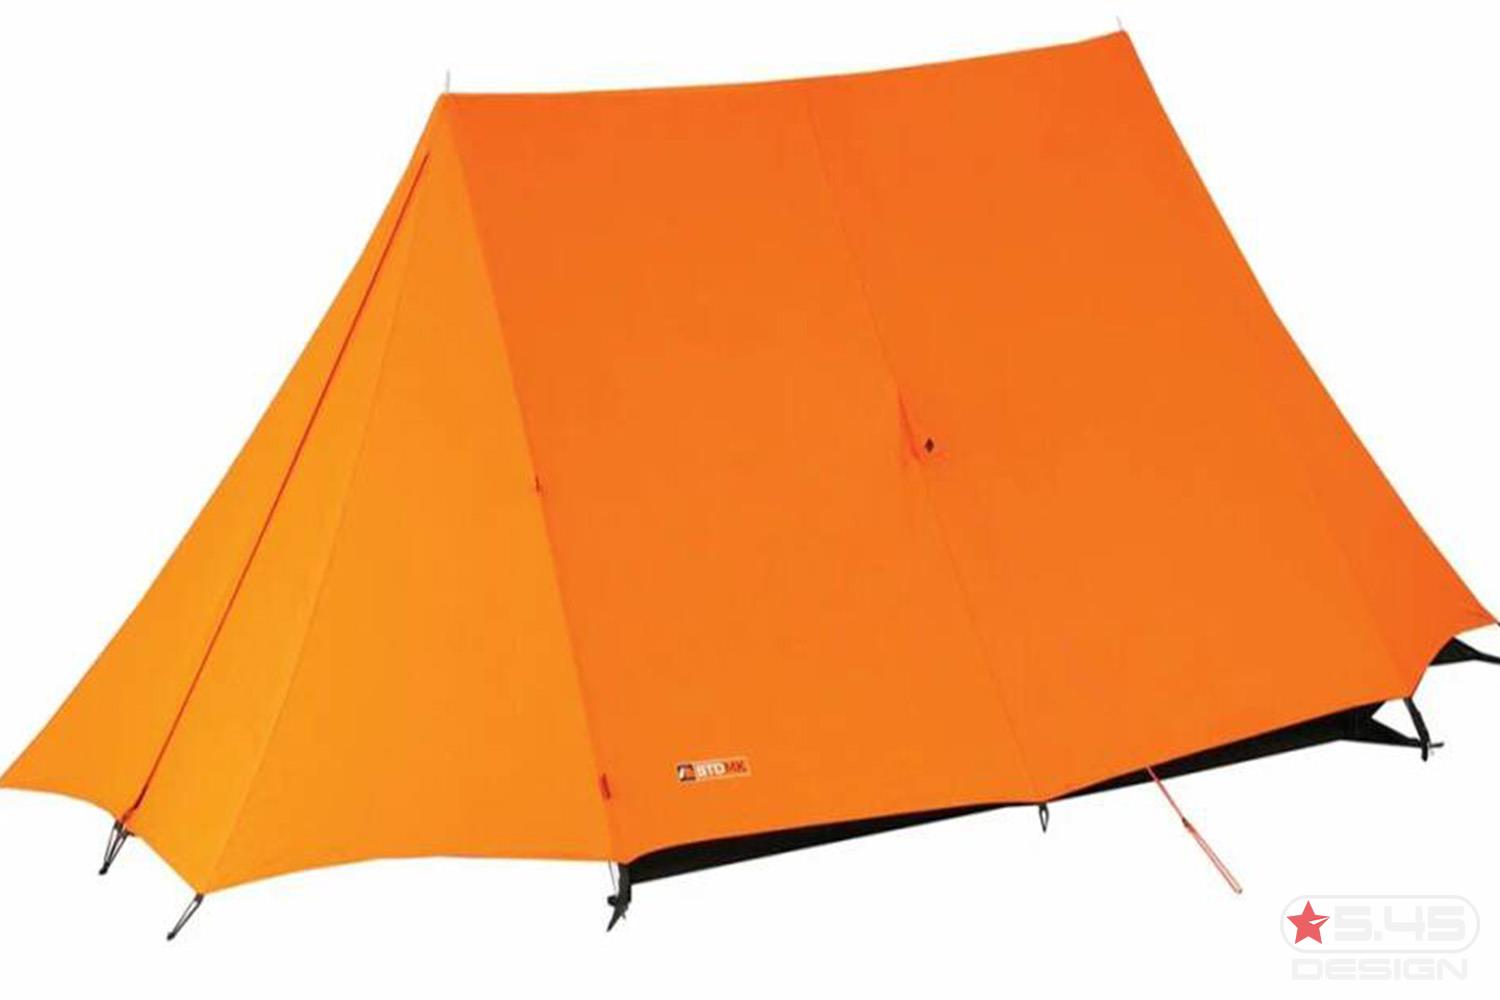 Шотландский альпинист Хэмиш Хэмилтон стал известен благодаря своей идее применения в тентах палаток ярко-жёлтого и оранжевого цветов.